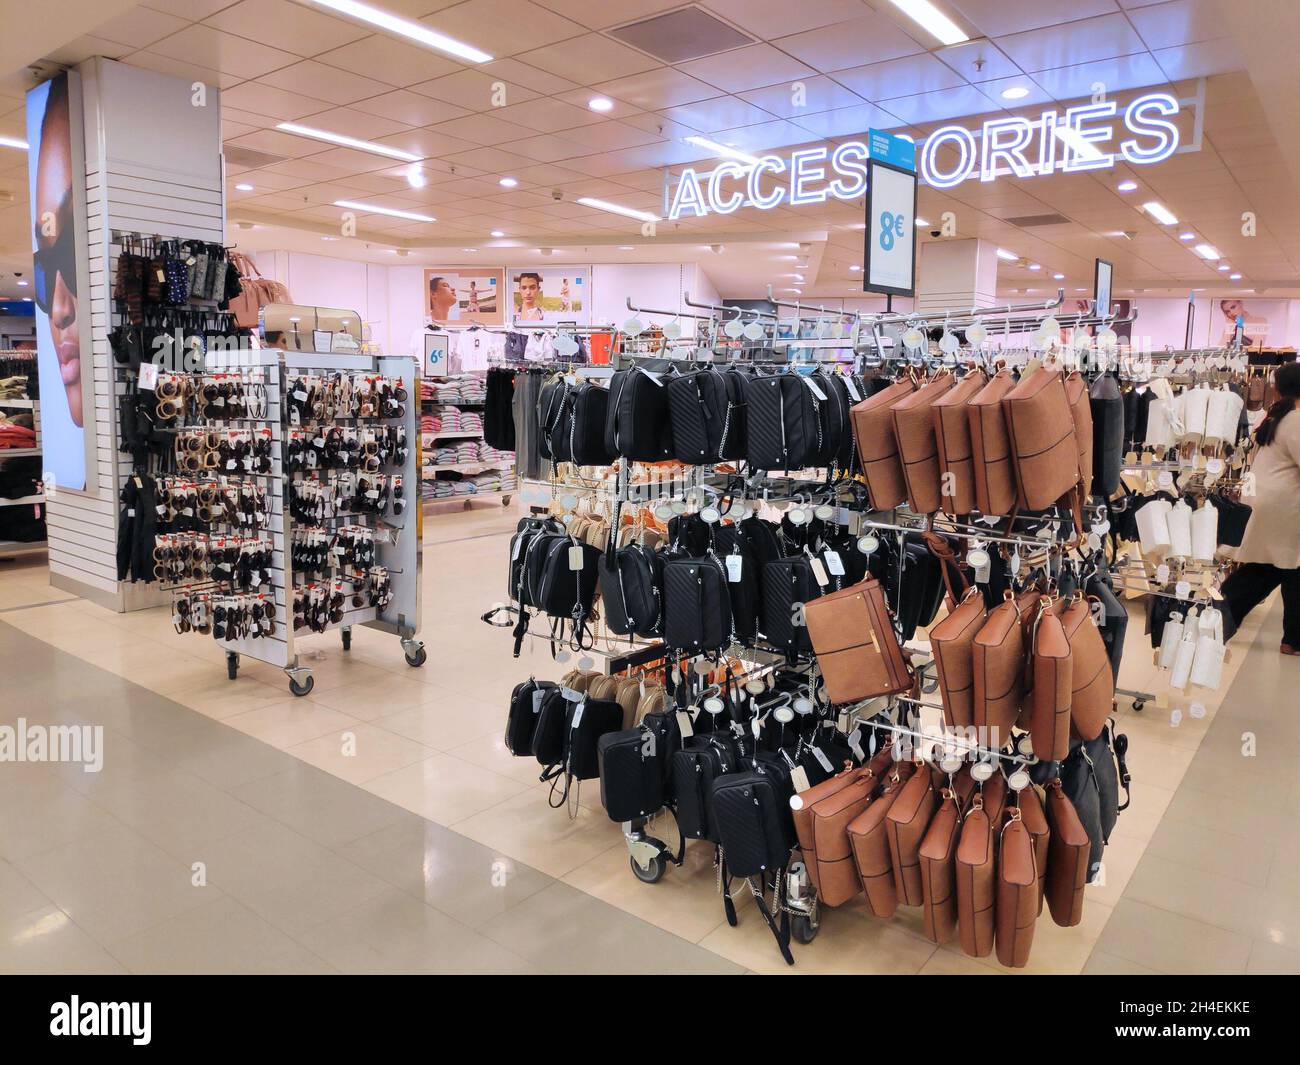 KÖLN, 19. SEPTEMBER 2021: Lederwaren, Accessoires und Handtaschen in einem  Primark Markengeschäft in Köln Stockfotografie - Alamy